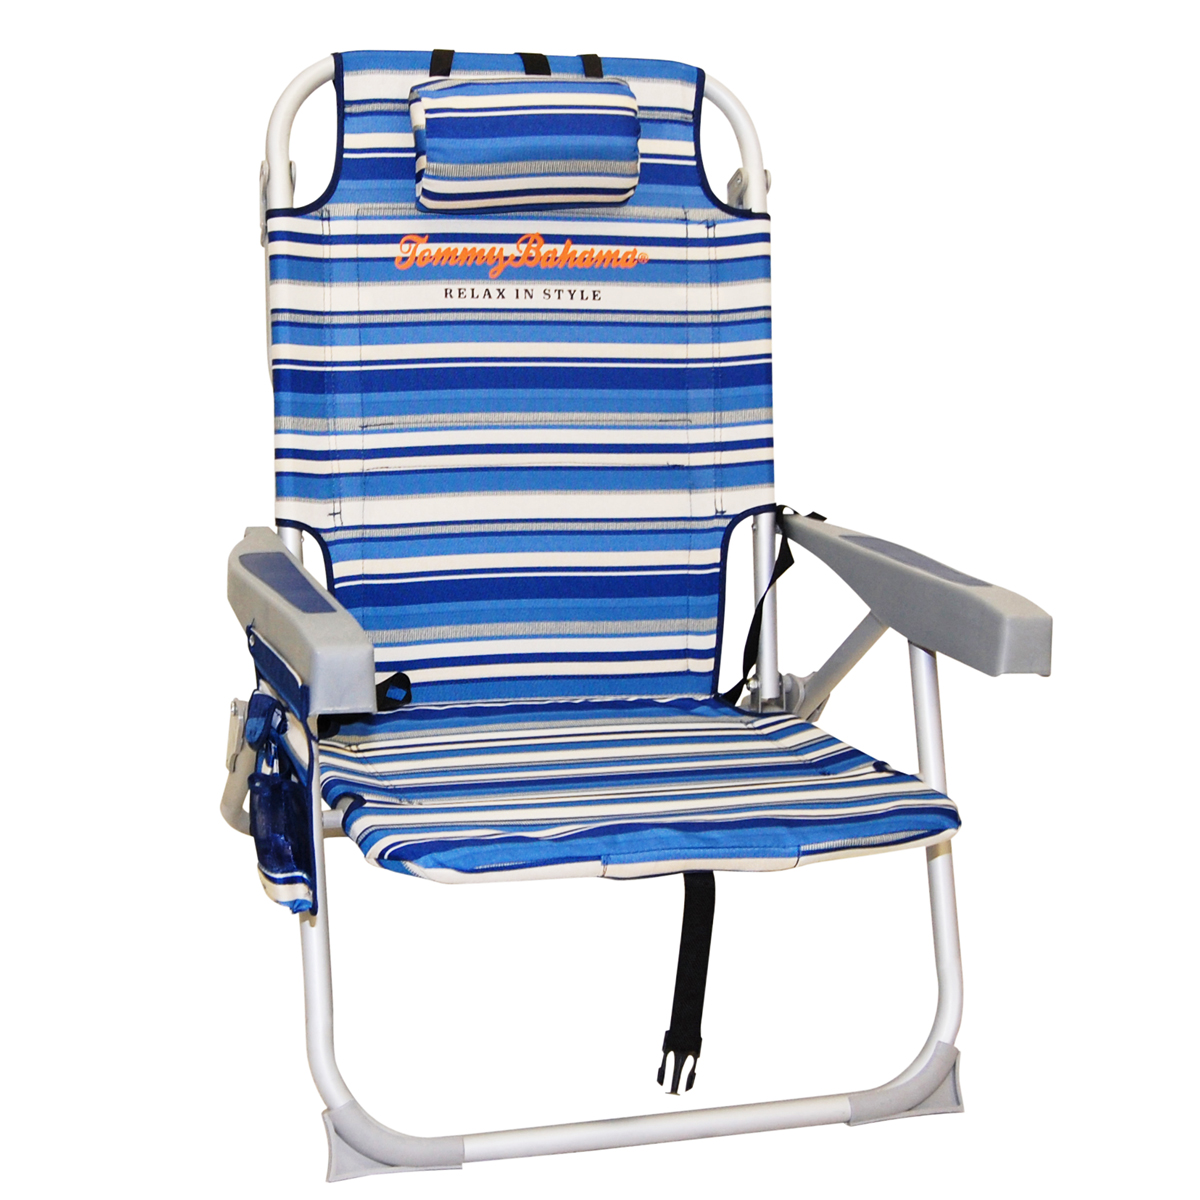 tommy bahama beach chair